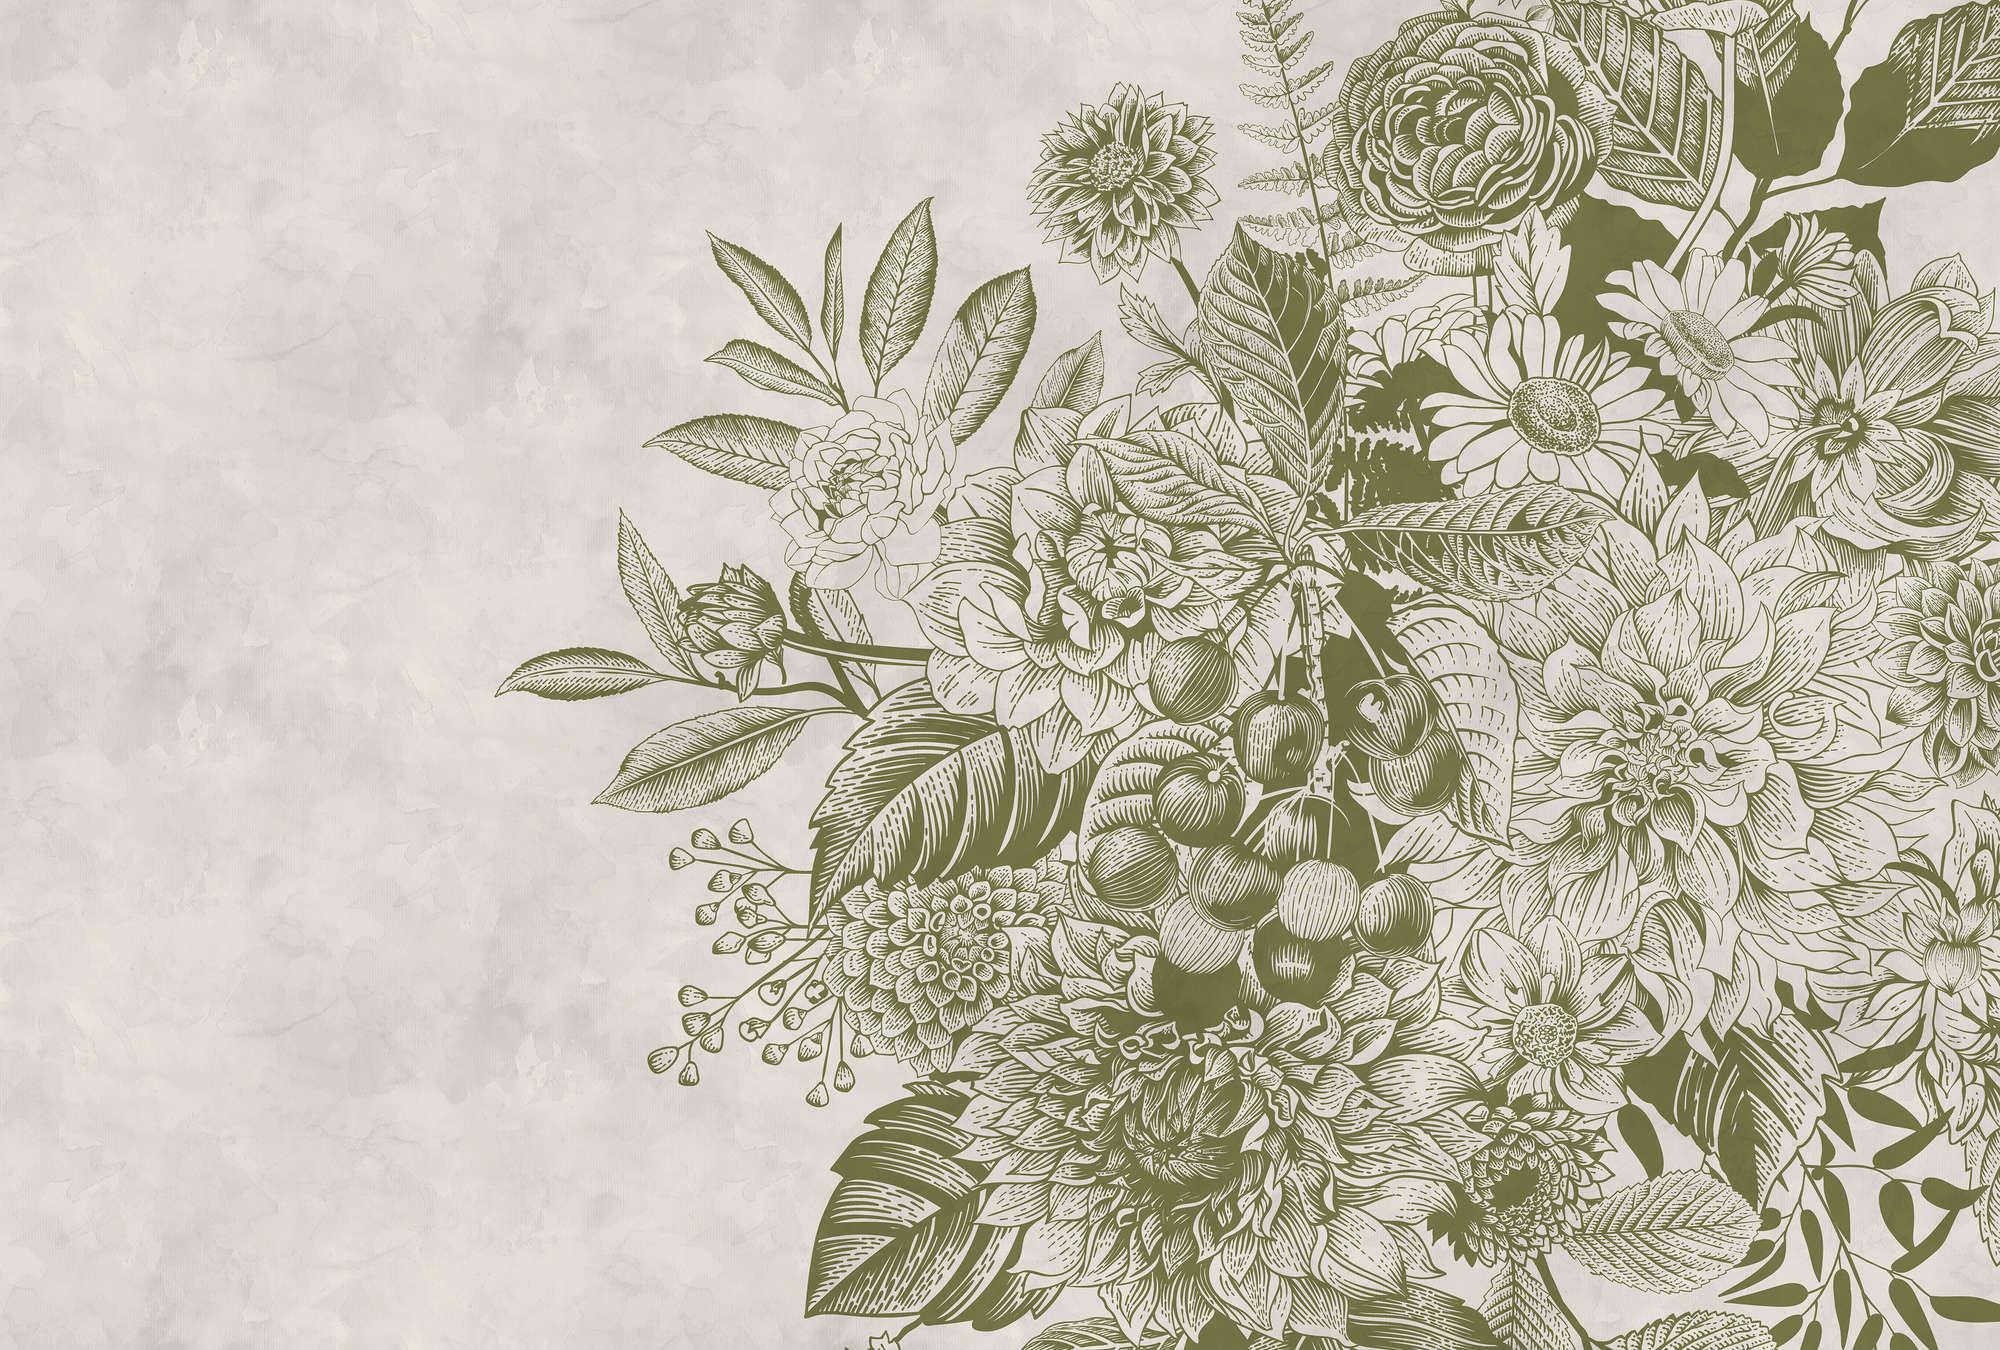             Fototapete Blumen Strauch – Grün, Weiß
        